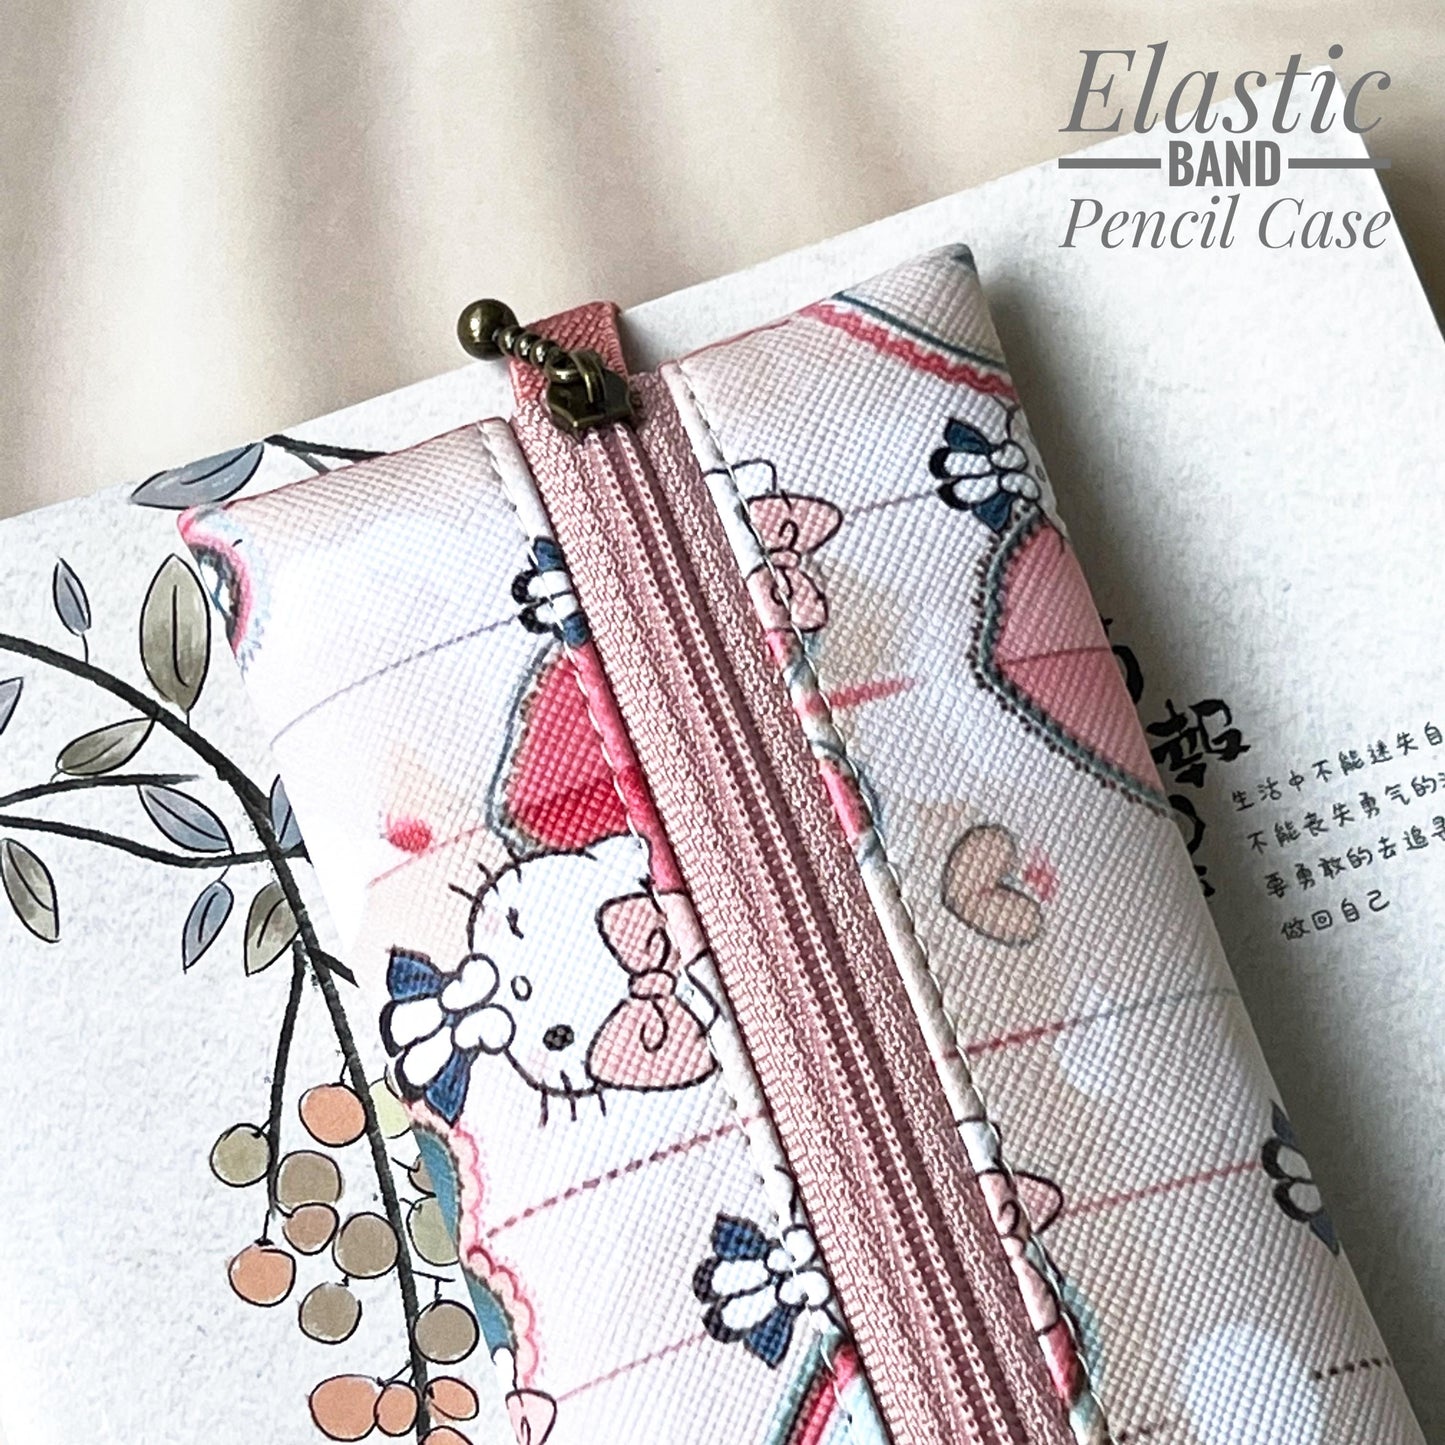 Elastic Band Pencil Case - EBPC19